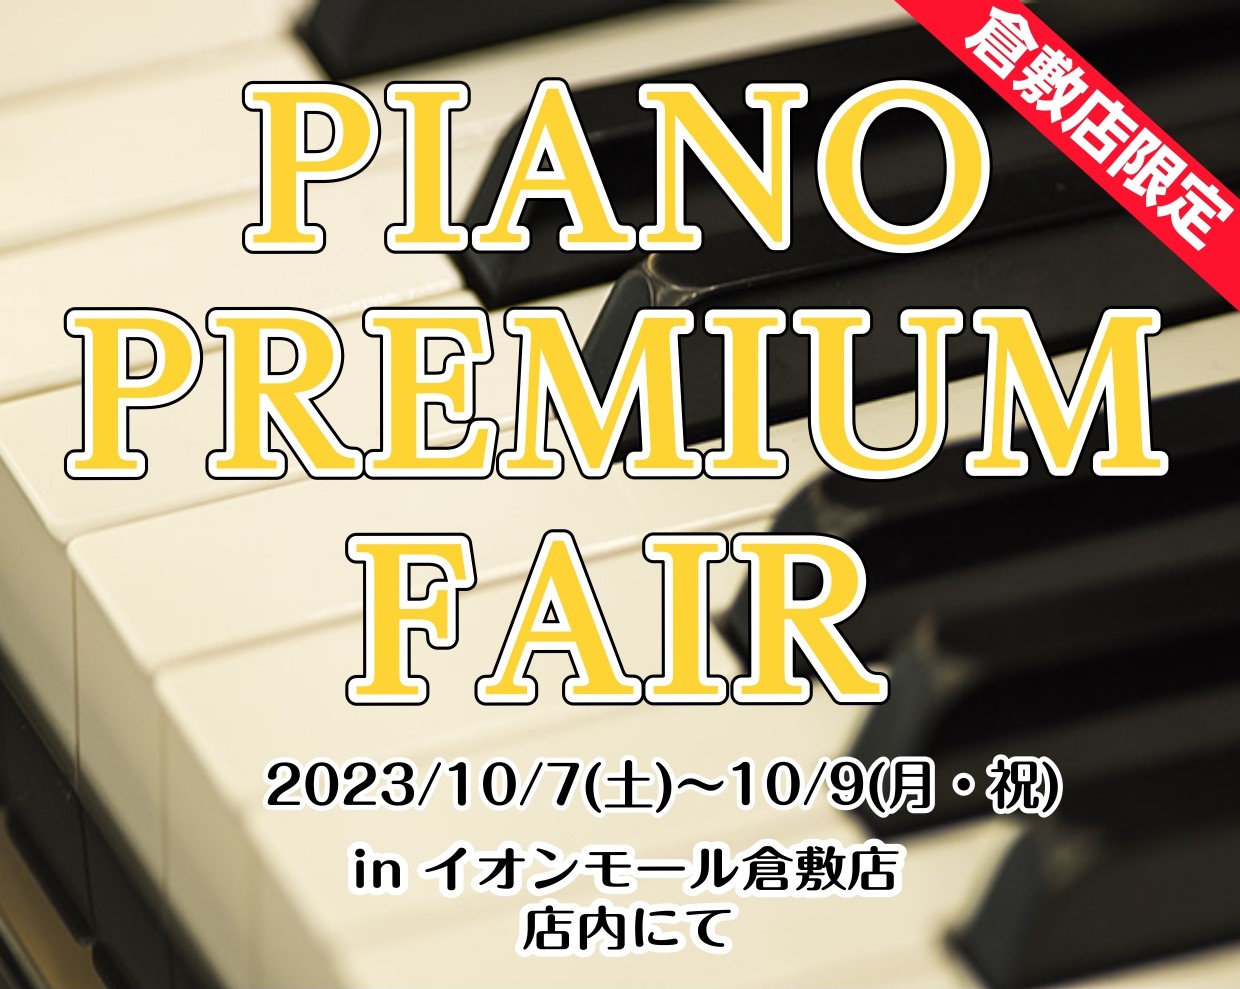 HPをご覧の皆様こんにちは。イオンモール倉敷店ピアノアドバイザーの江﨑（えさき）です。イオンモール倉敷店では、 「PIANO PREMIUM FAIR」 と題しまして、 今週末の10月7日(土)～10月9日(月・祝)に店舗限定のピアノフェアを開催します。 新品アコースティックピアノ、中古アコースティ […]